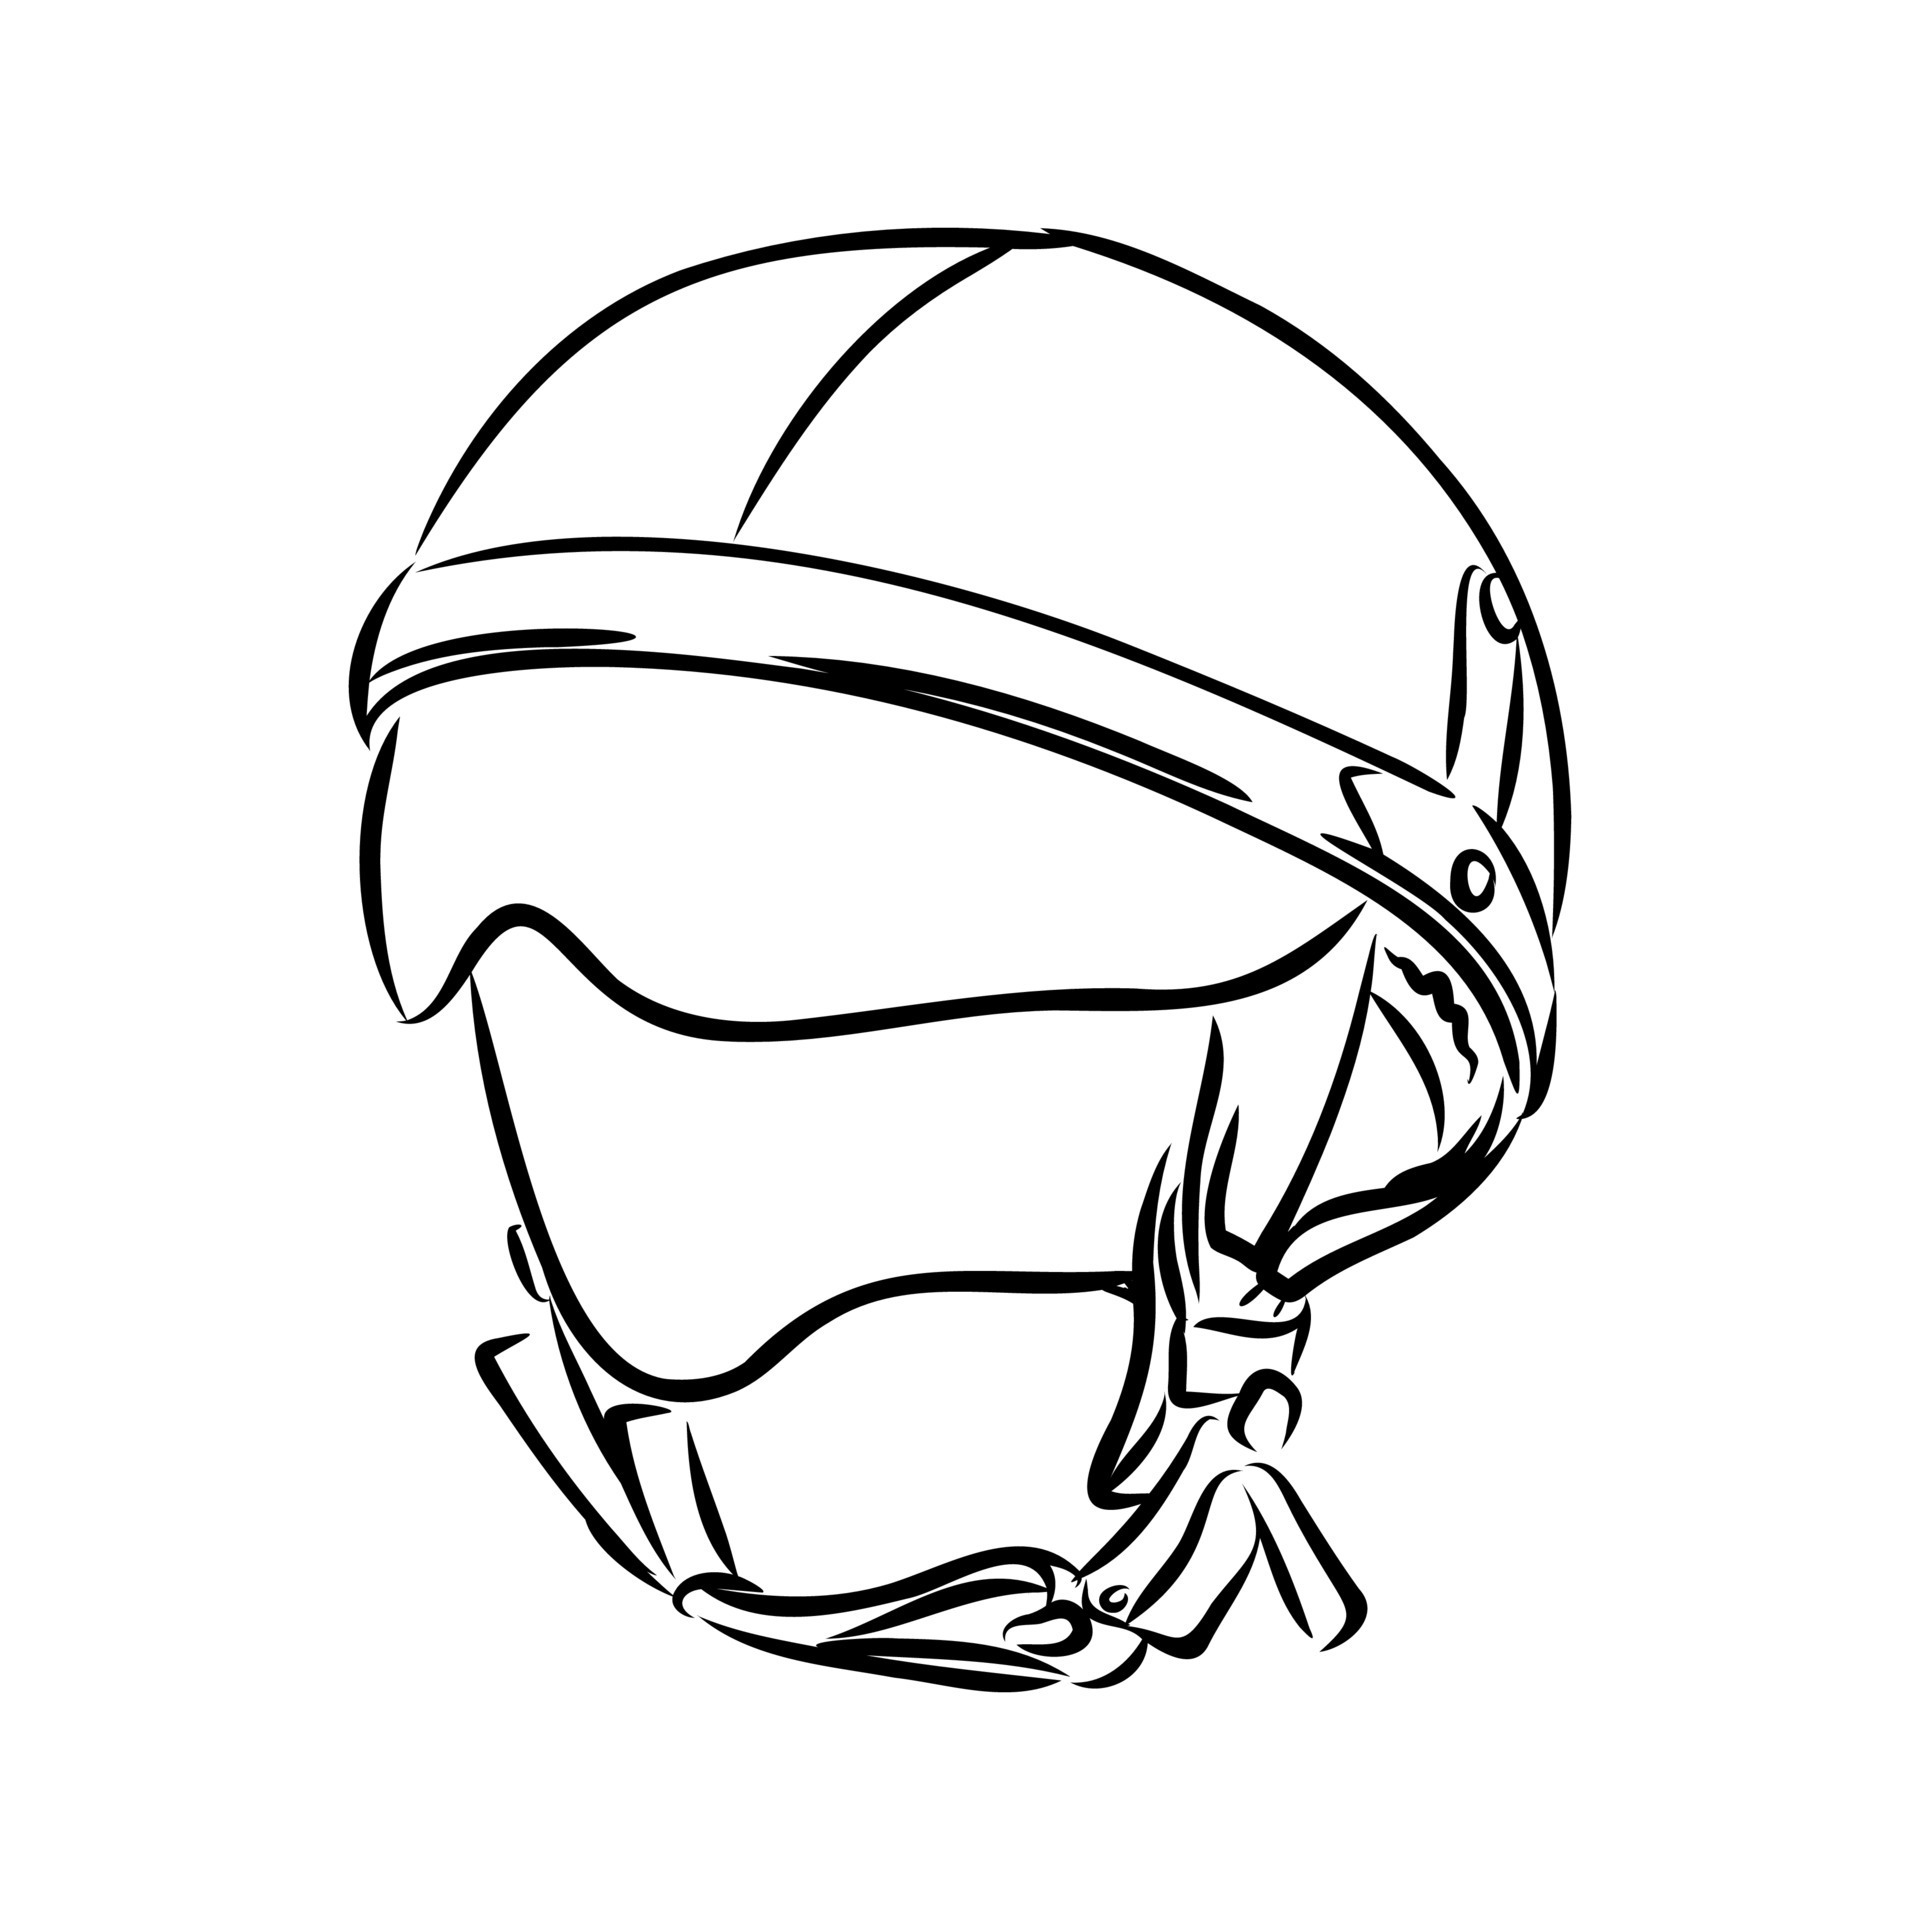 Fly racing Motorcycle Helmet Kinetic Sketch 2021 Black | Kidinn